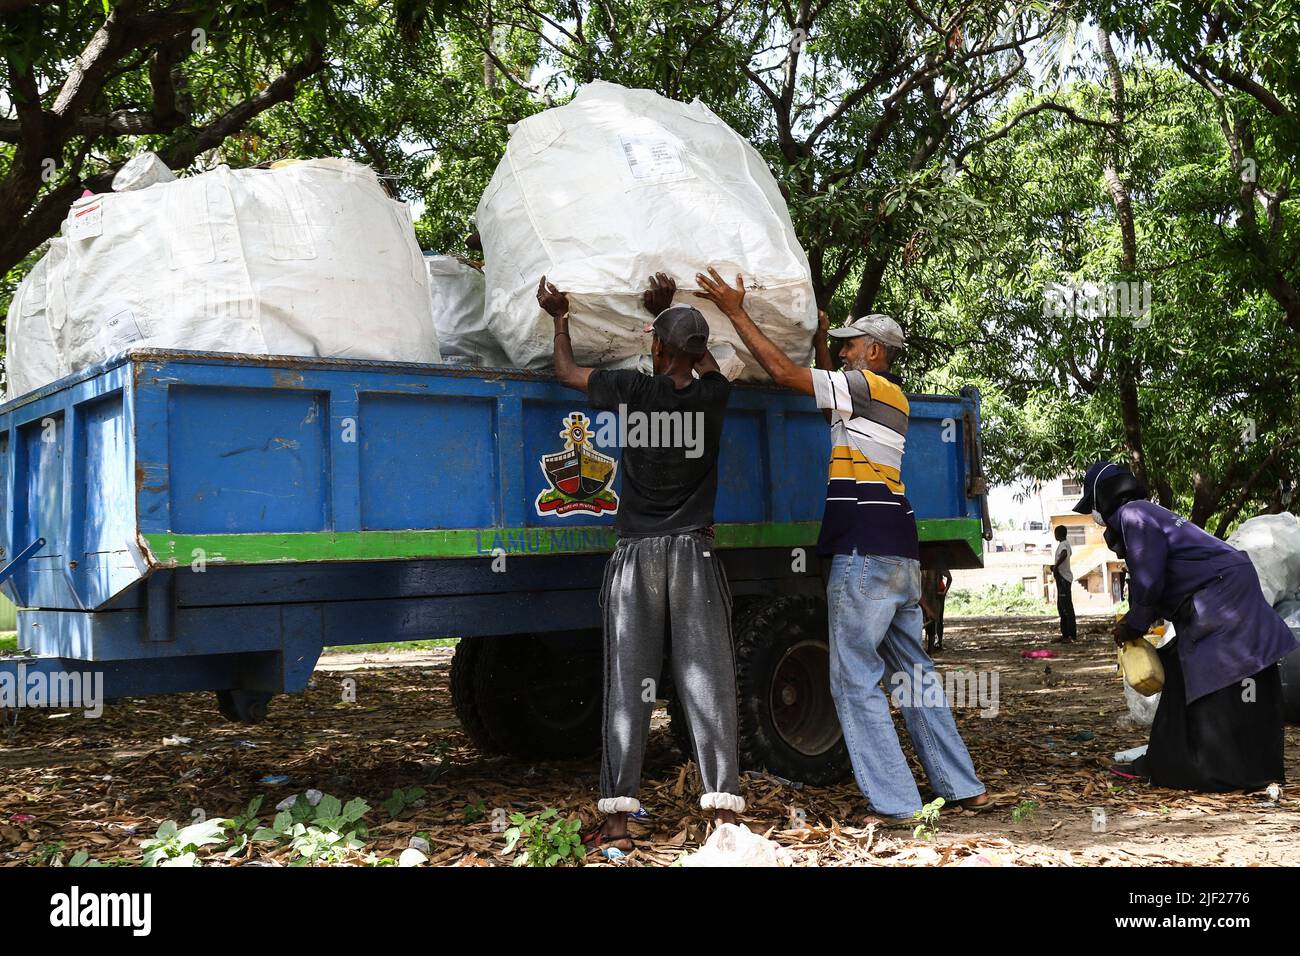 Los miembros de un grupo ambientalista comunitario, Weka Lamu Safi (Mantener Lamu Limpio), cargan en un remolque de tractor una semana de recolección de residuos plásticos recolectados dentro de la isla de Lamu antes de venderlos a la organización FlipFlopi para su reciclaje. La Organización FlipFlopi en 2019 construyó un velero casi enteramente de residuos plásticos reciclados recolectados en las orillas del Océano Índico. La contaminación causada por las actividades humanas ha afectado negativamente a los océanos. El Presidente de Kenia, Uhuru Kenyatta, en su discurso durante la conferencia oceánica en curso en Lisboa, Portugal, dijo que la contaminación plástica es enfermiza y contami Foto de stock